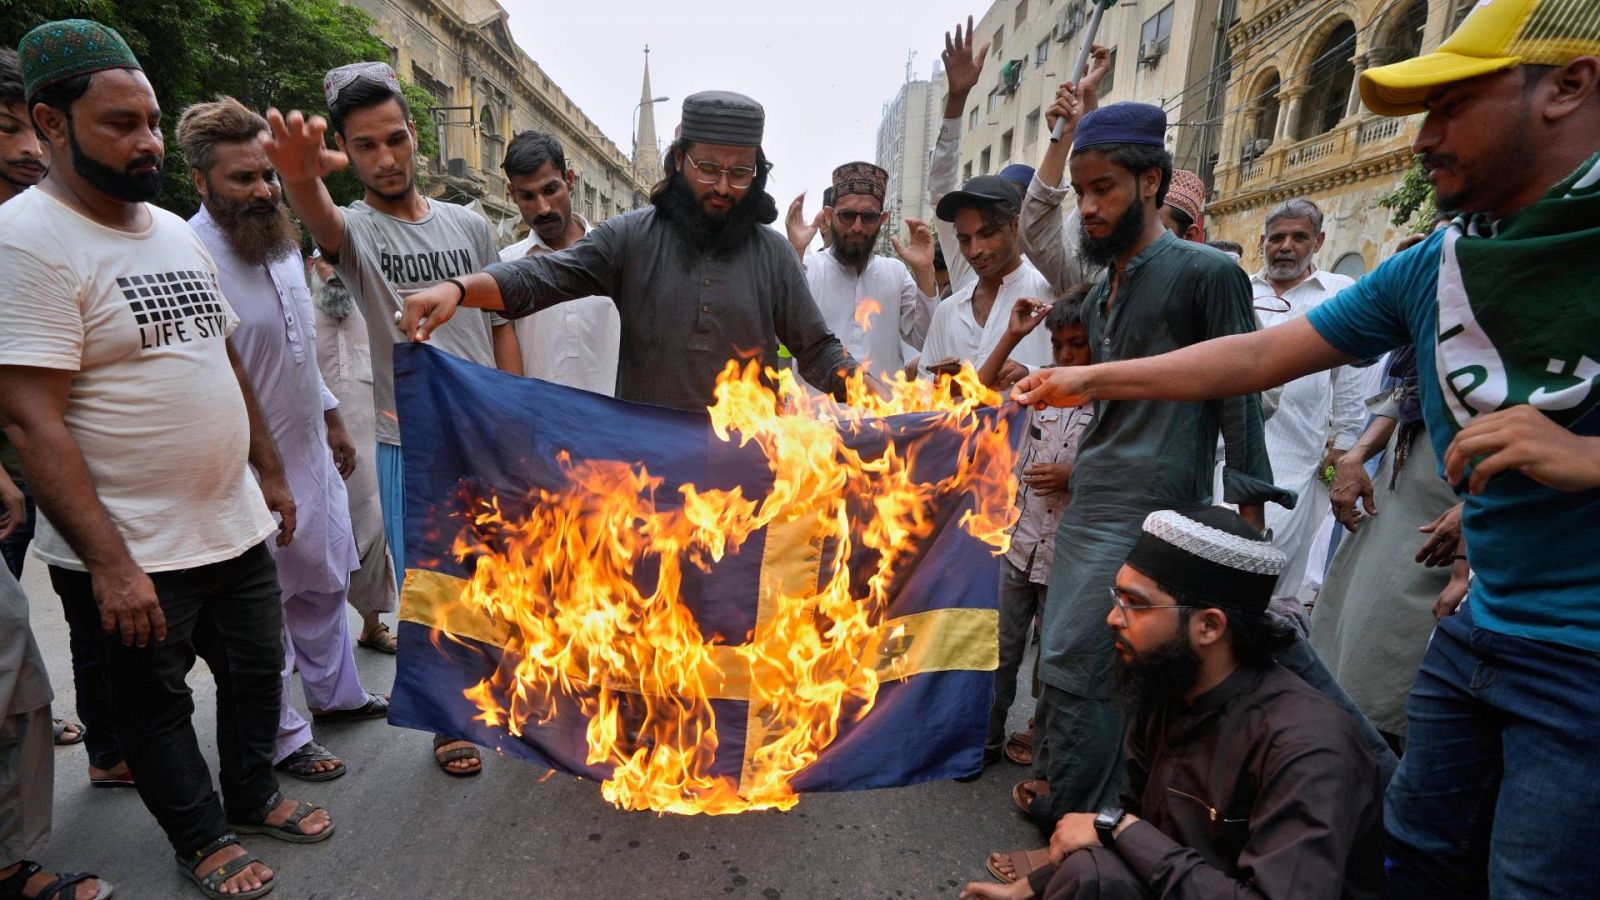 Imagen de archivo: partidarios del partido radical islamista Tahrik-e-Labaik de Pakistán queman una bandera de Suecia como protesta por la quema del Corán en Estocolmo (7 de julio, Karachi, Pakistán). Foto: AP Photo/Fareed Khan